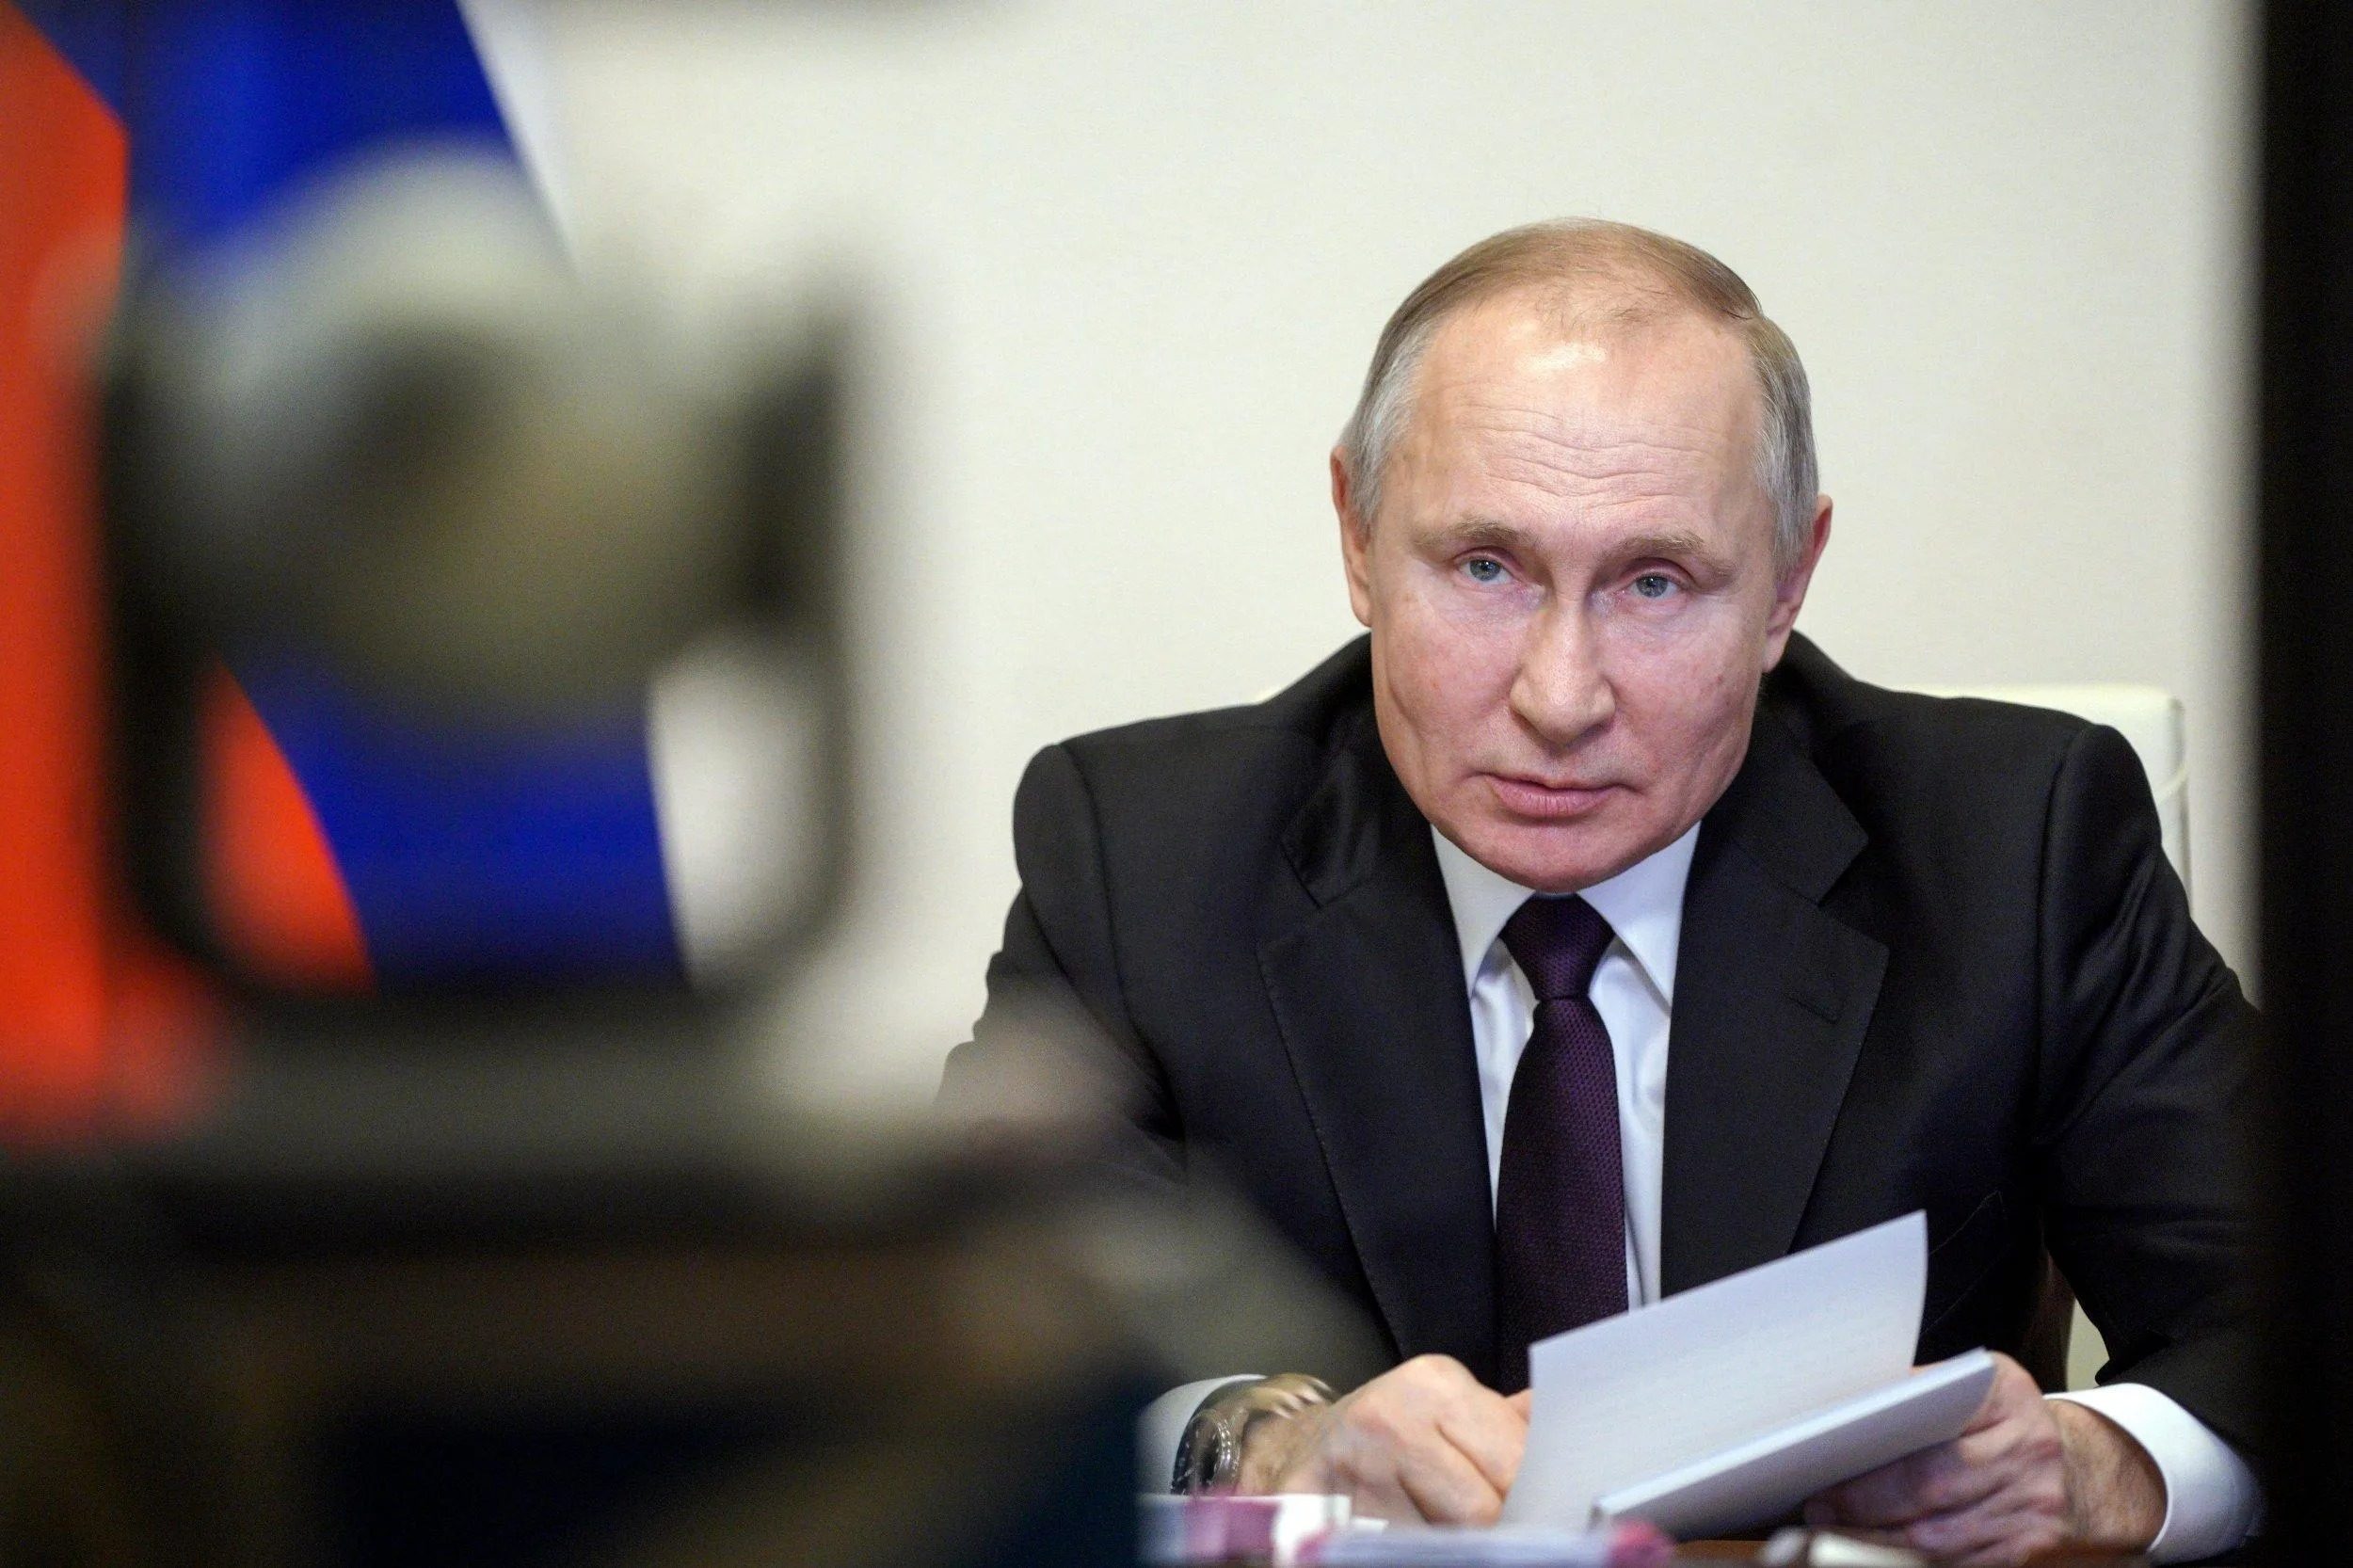 Побоюються замаху: політолог пояснив, чому ховають Путіна